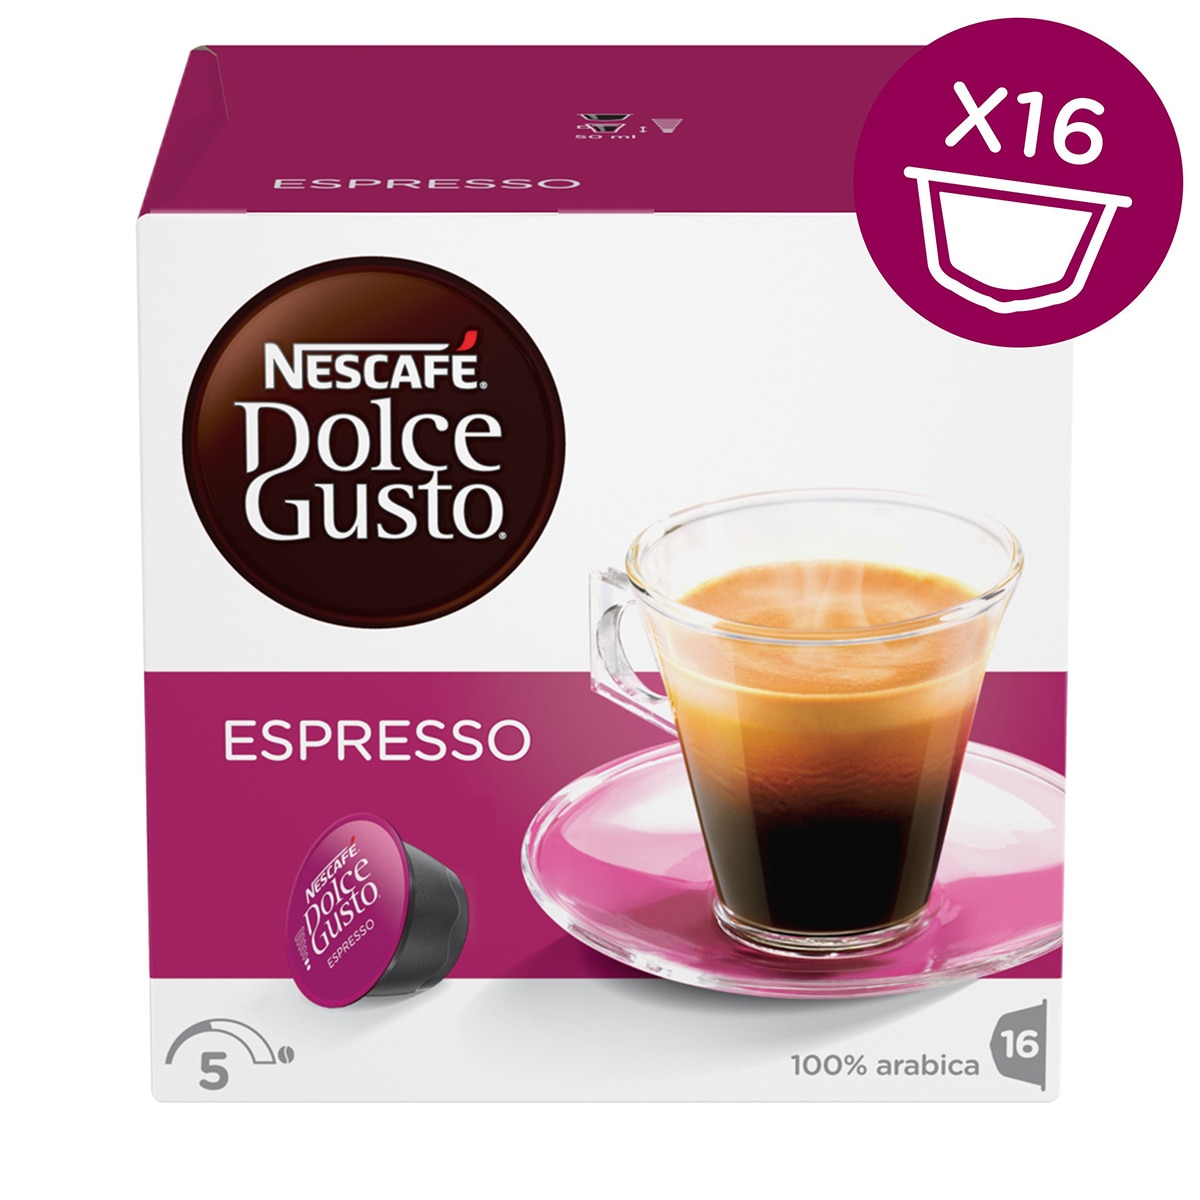 Dolce Gusto 雀巢義式濃縮咖啡產自西班牙含16顆膠囊,可沖泡16杯經典的義式濃縮咖啡。